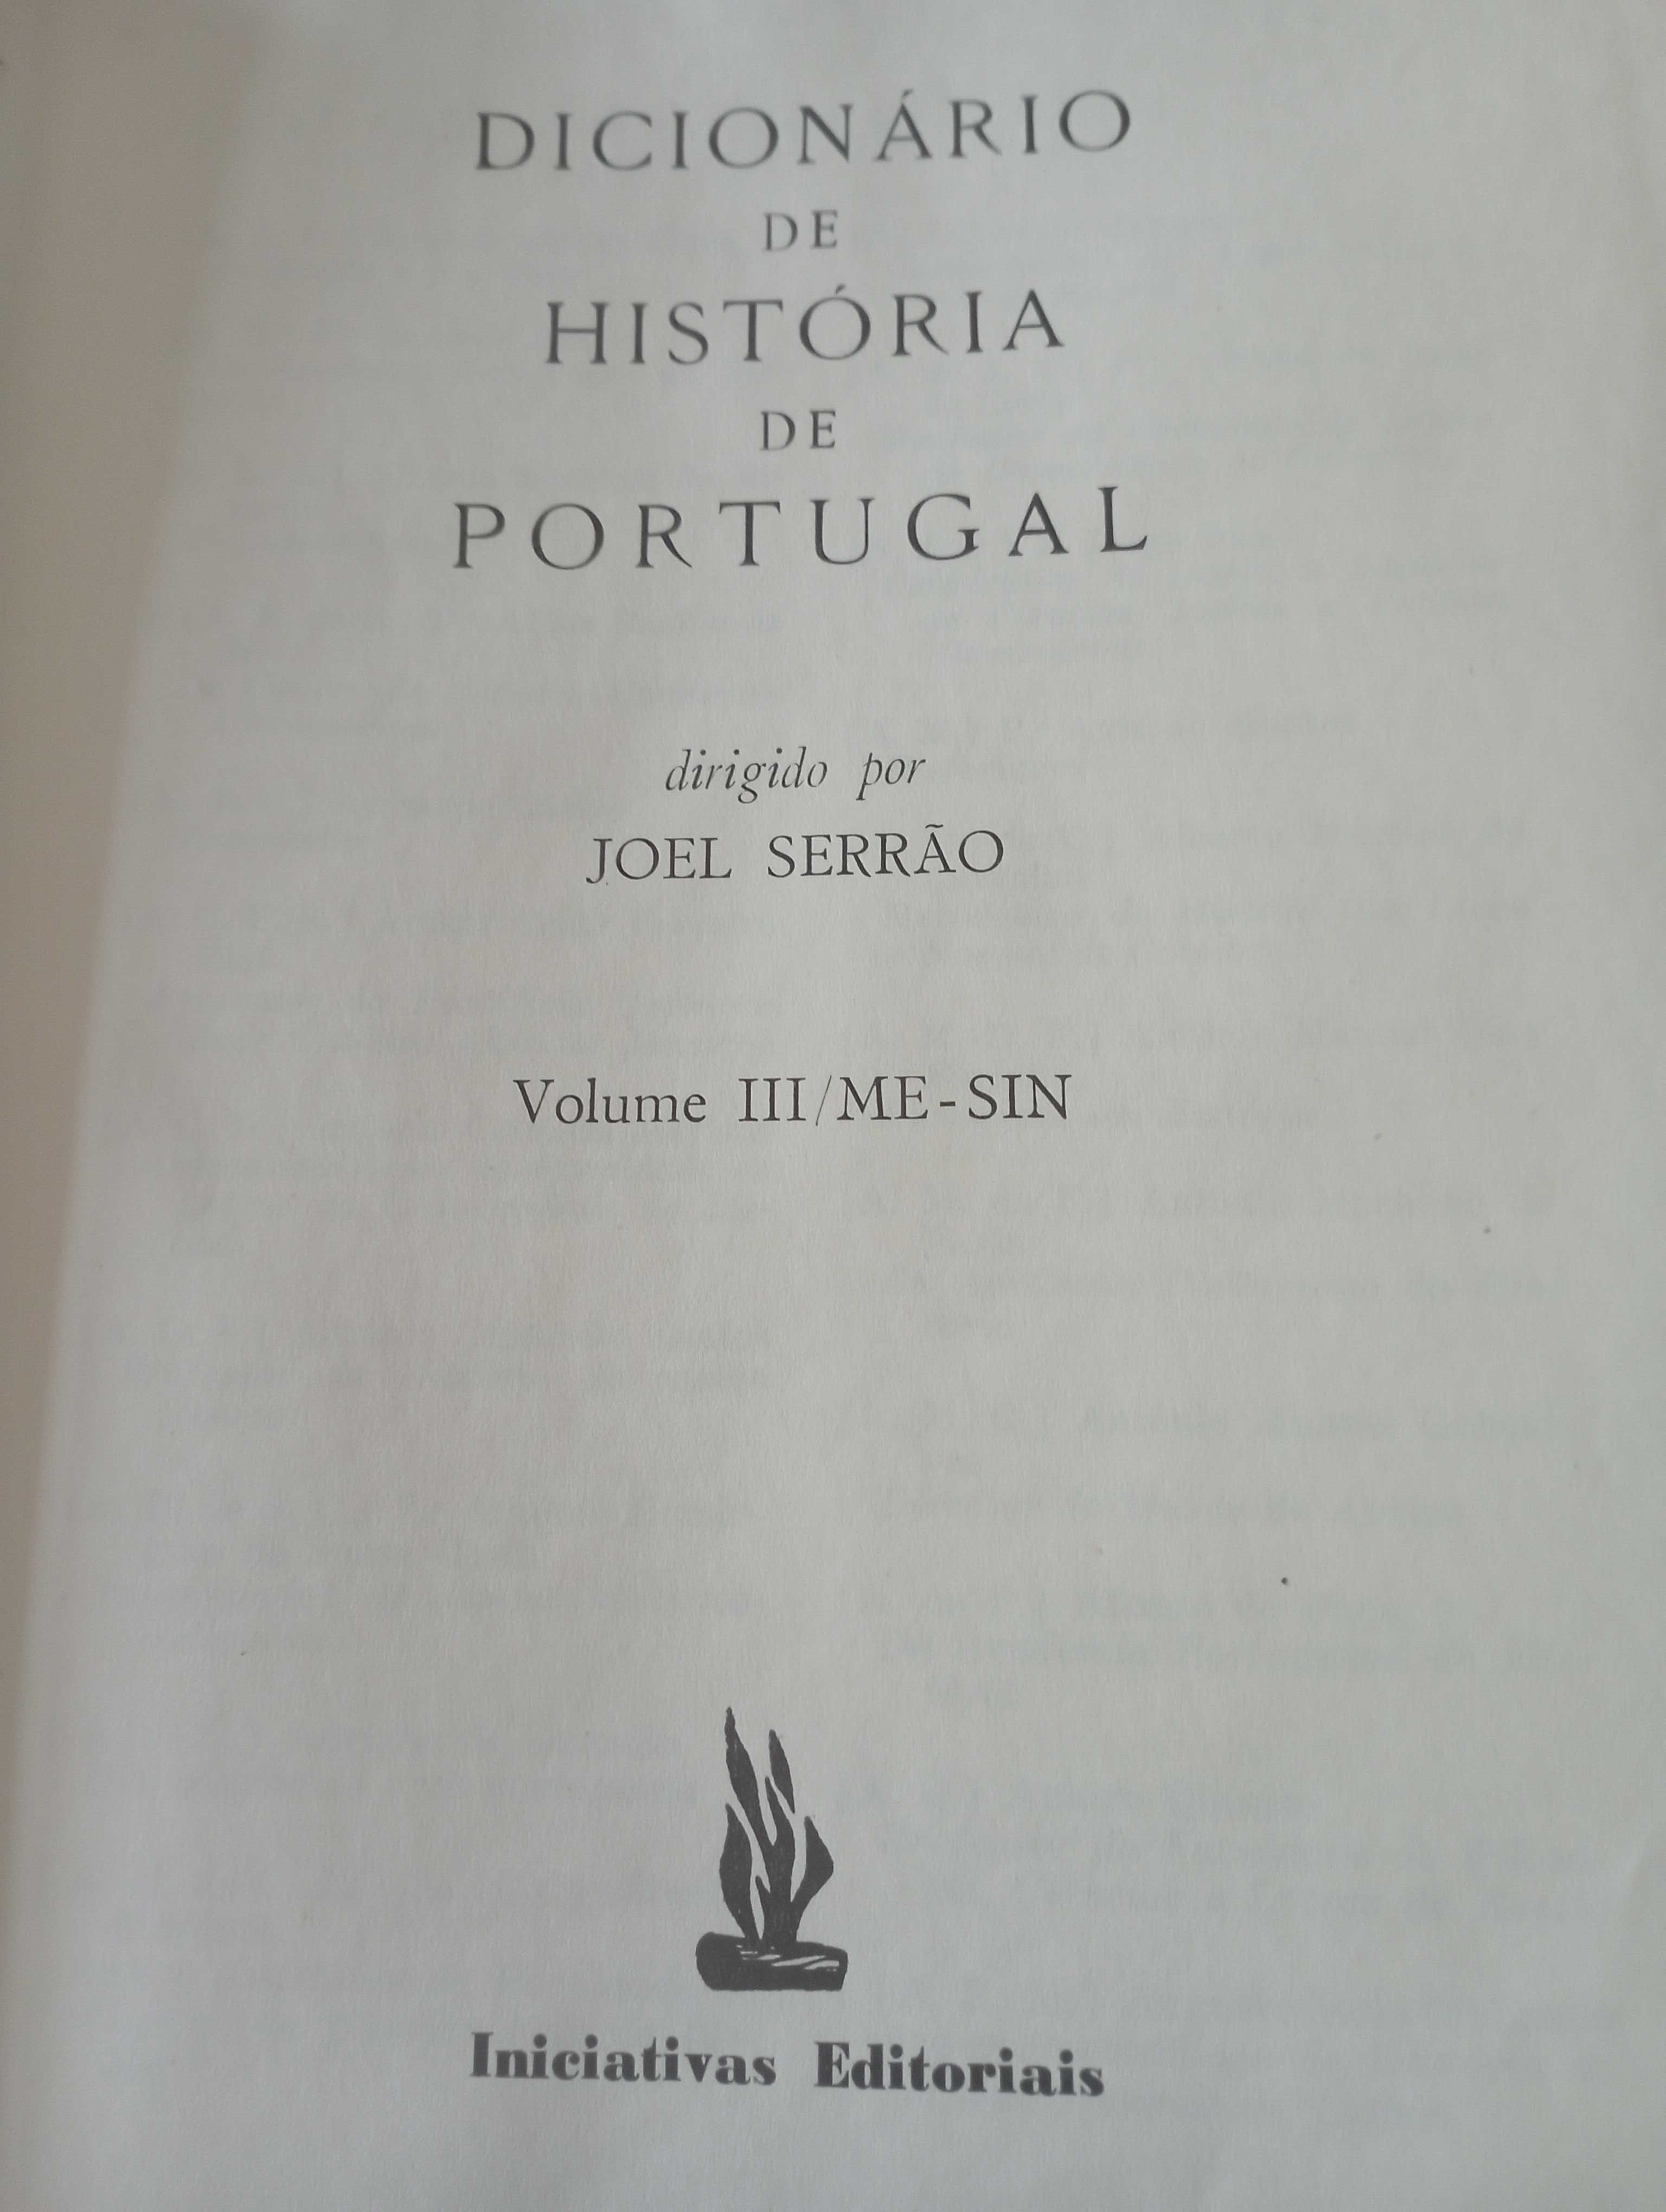 Dicionário de História de Portugal - JOEL SERRÃO -INICIATIVAS